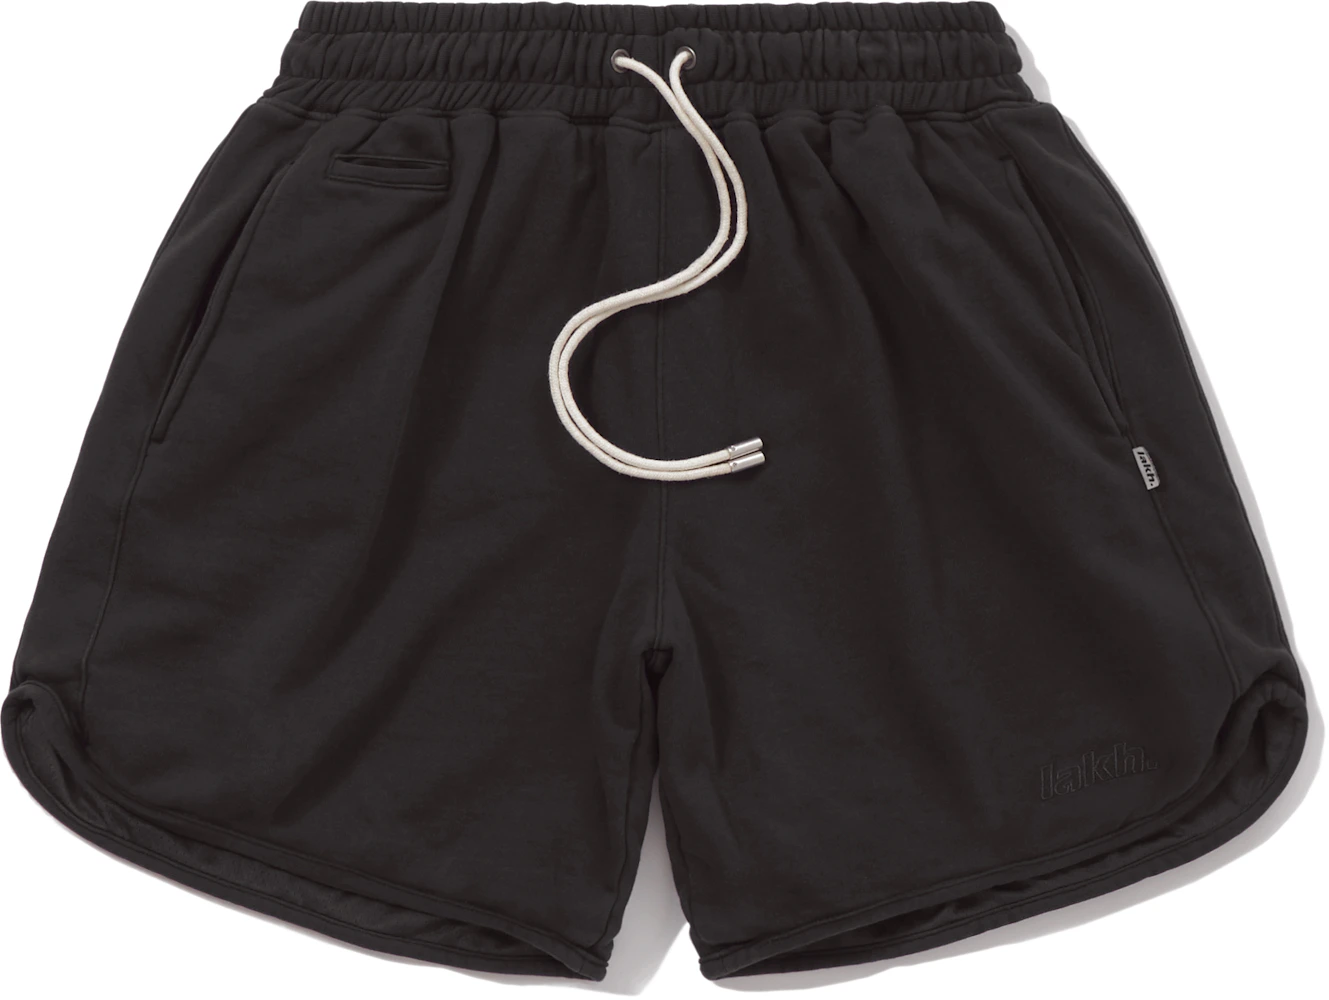 LAKH Knit 3.0 Reversible Shorts Black Men's - FW21 - US